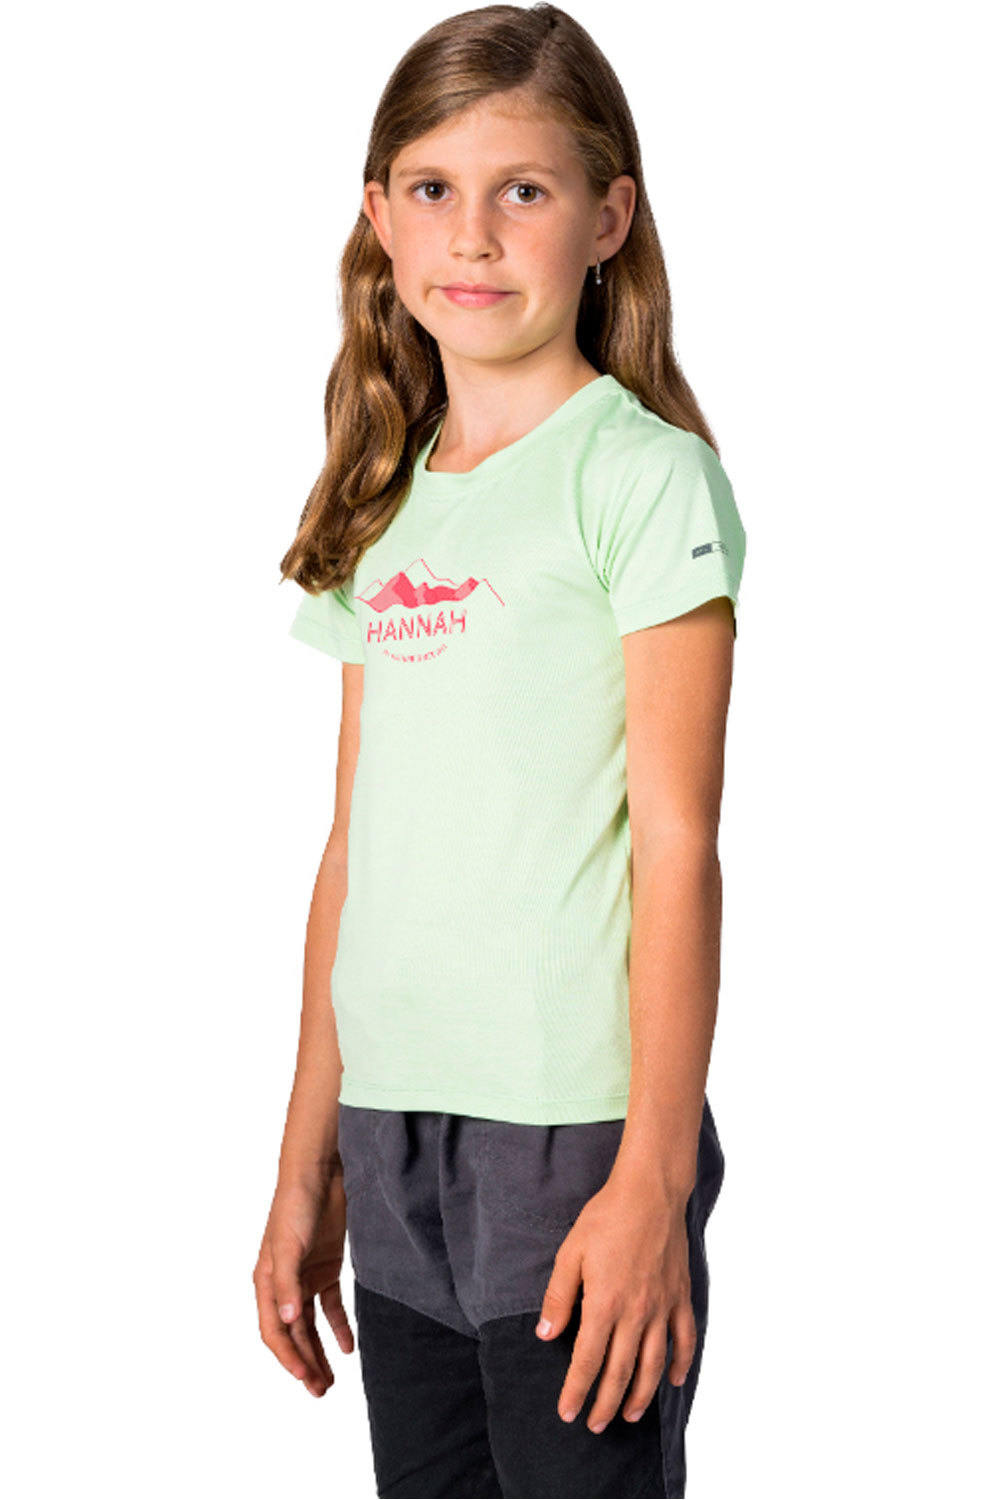 Hannah camiseta montaña manga corta niño CORNET JR II vista detalle